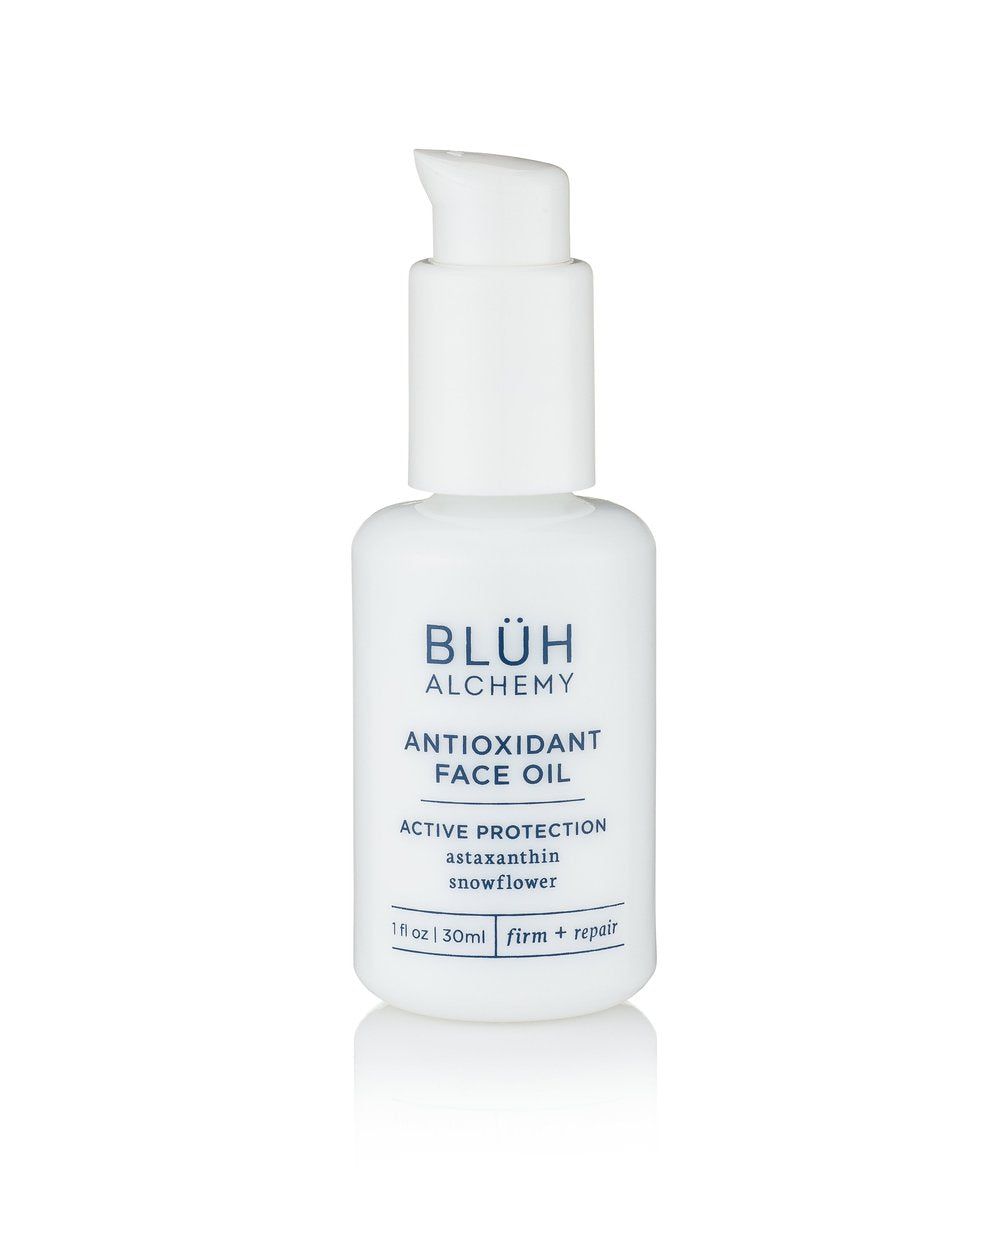 Bluh Alchemy Antioxidant Face Oil